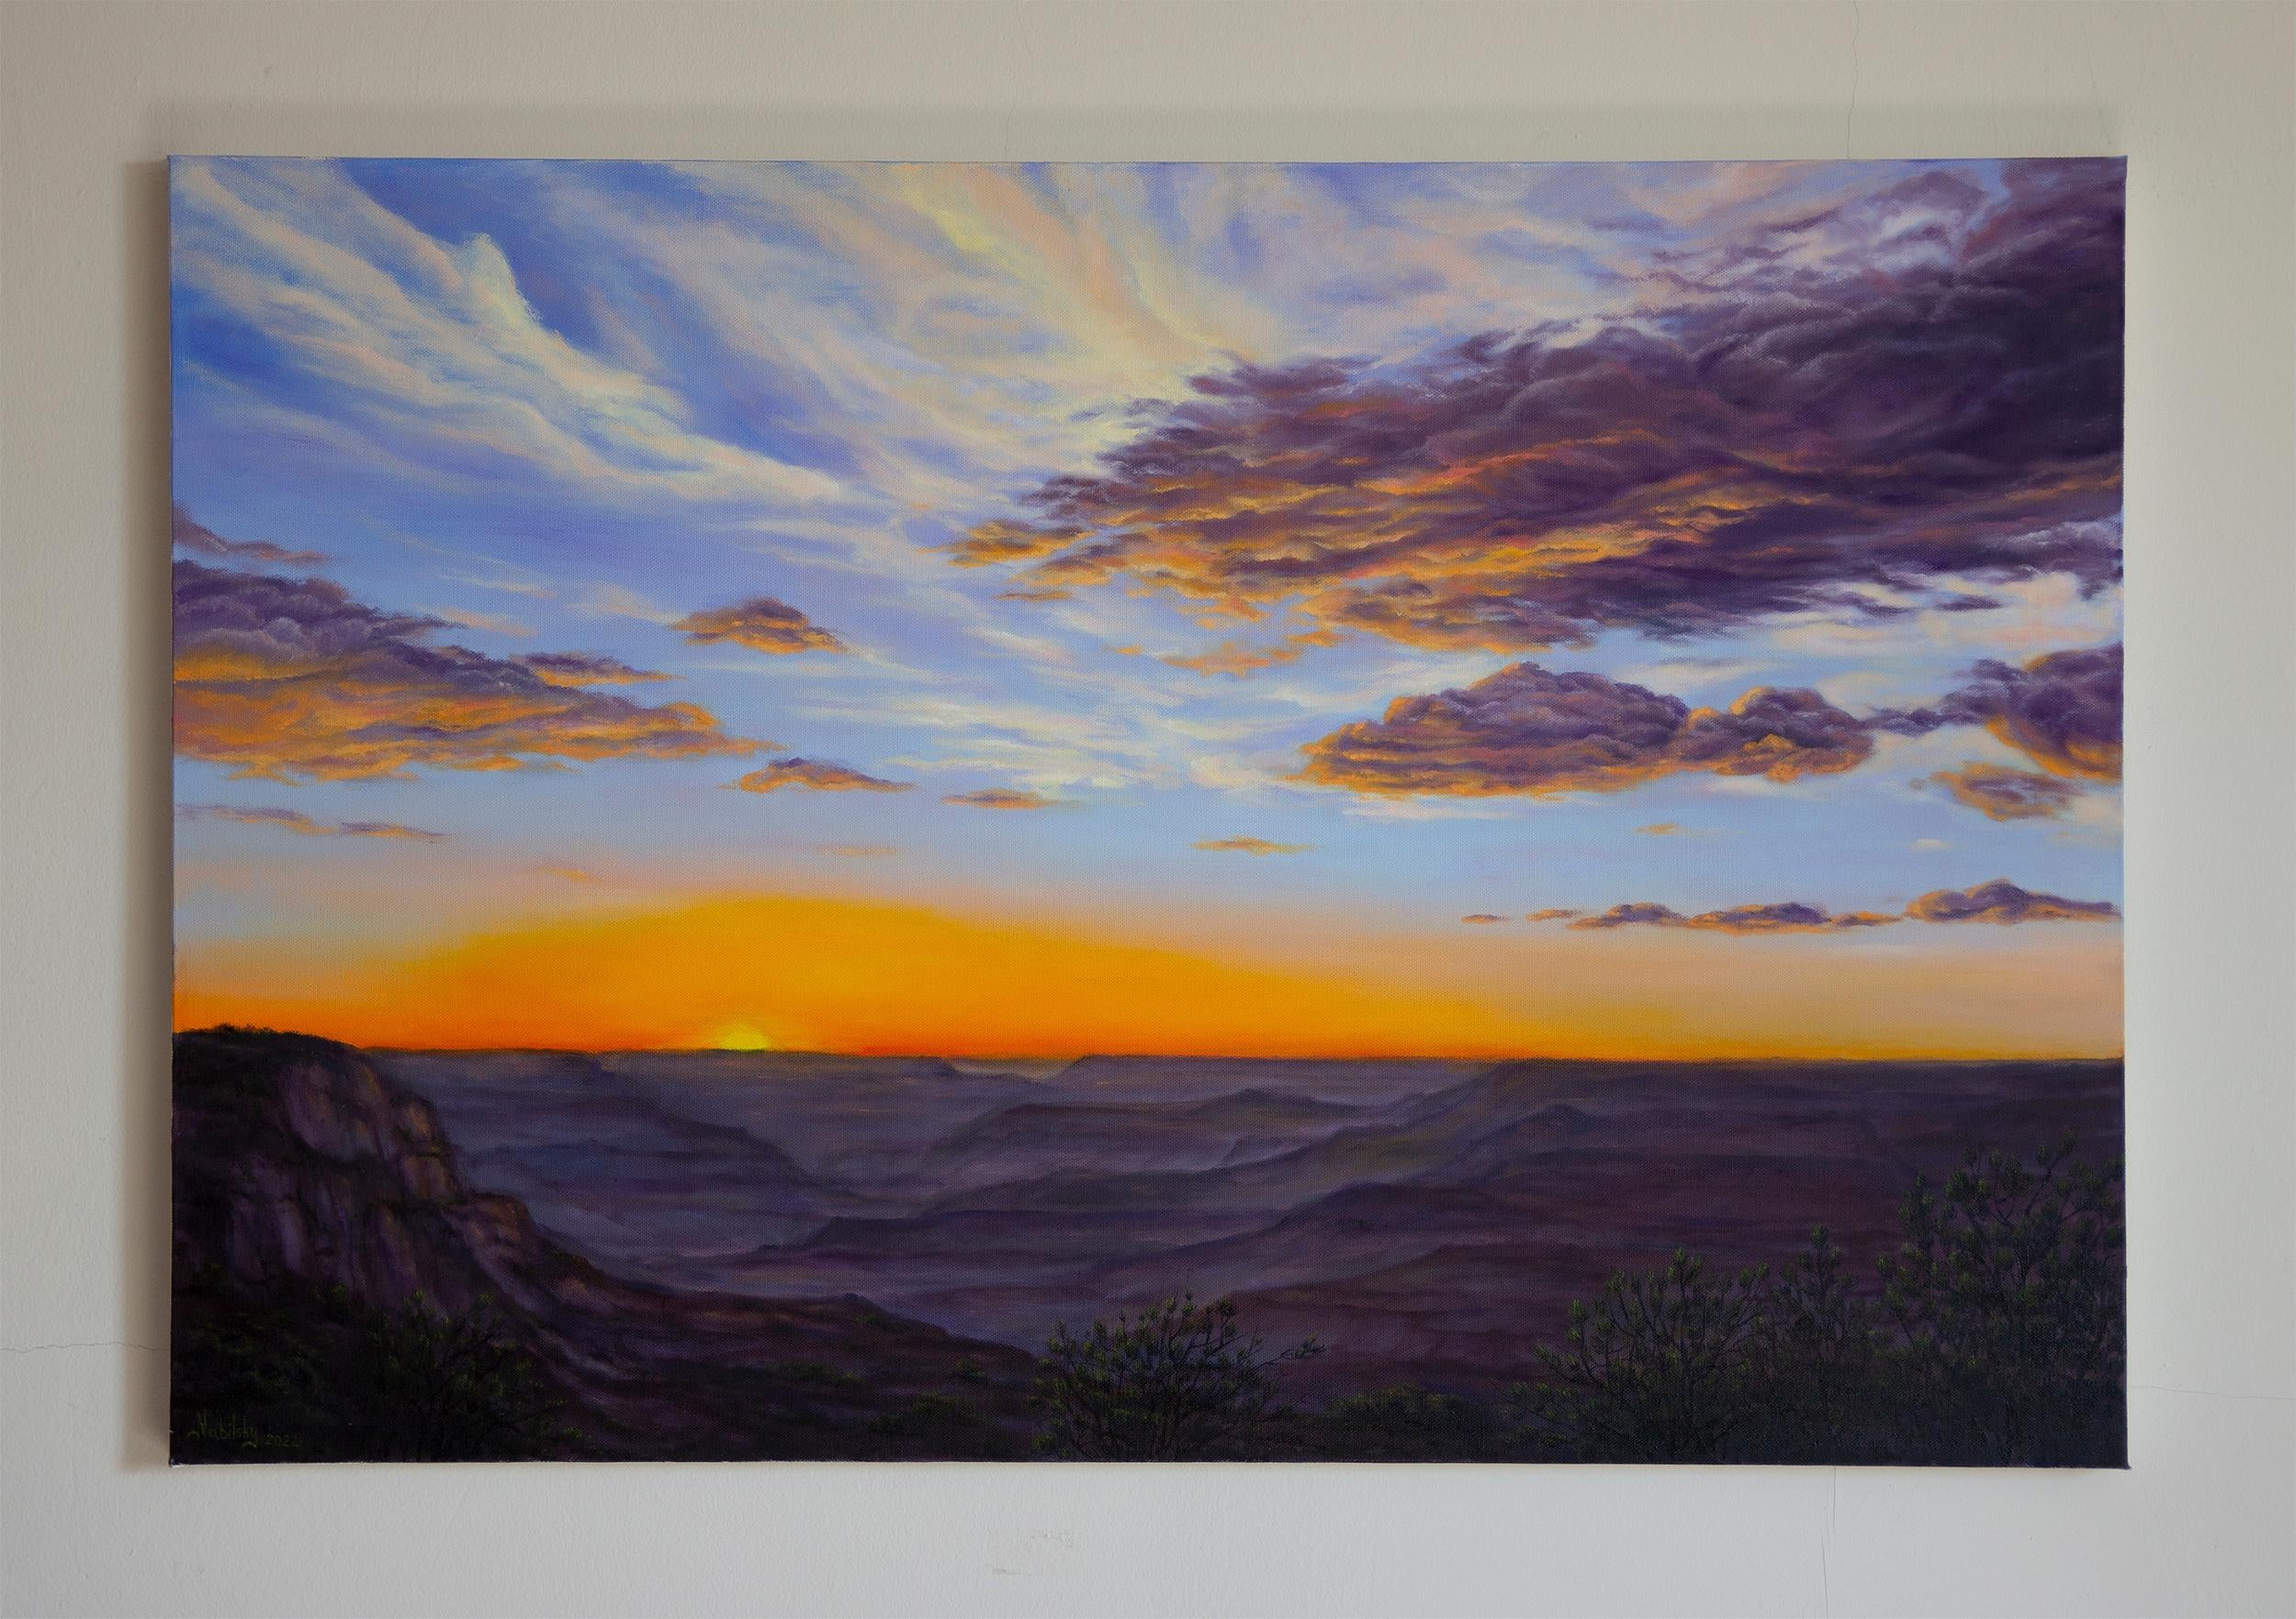 <p>Kommentare des Künstlers<br>Die Sonne geht über dem Grand Canyon unter und hinterlässt eine Decke aus weichem Licht über seinen Kämmen. Es ist eine magische Zeit, in der die Landschaft von einer faszinierenden Farbenpracht erfüllt ist. Die